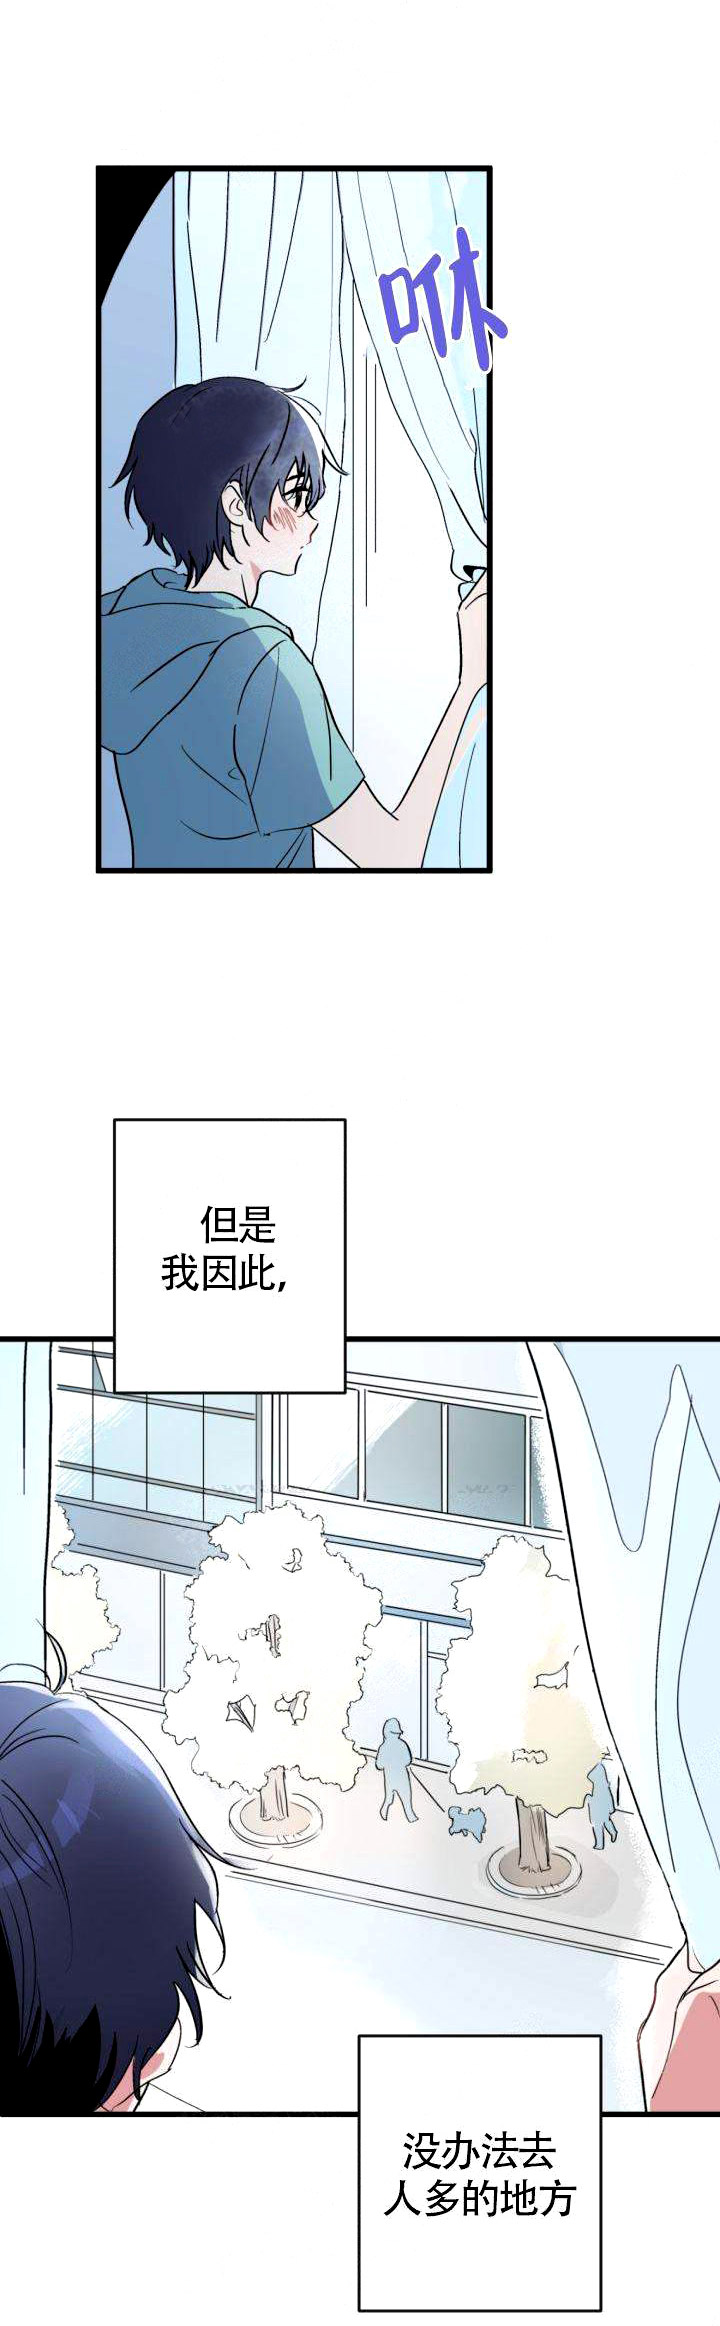 《一见倾心》漫画韩漫完结版 — 全集免费阅读